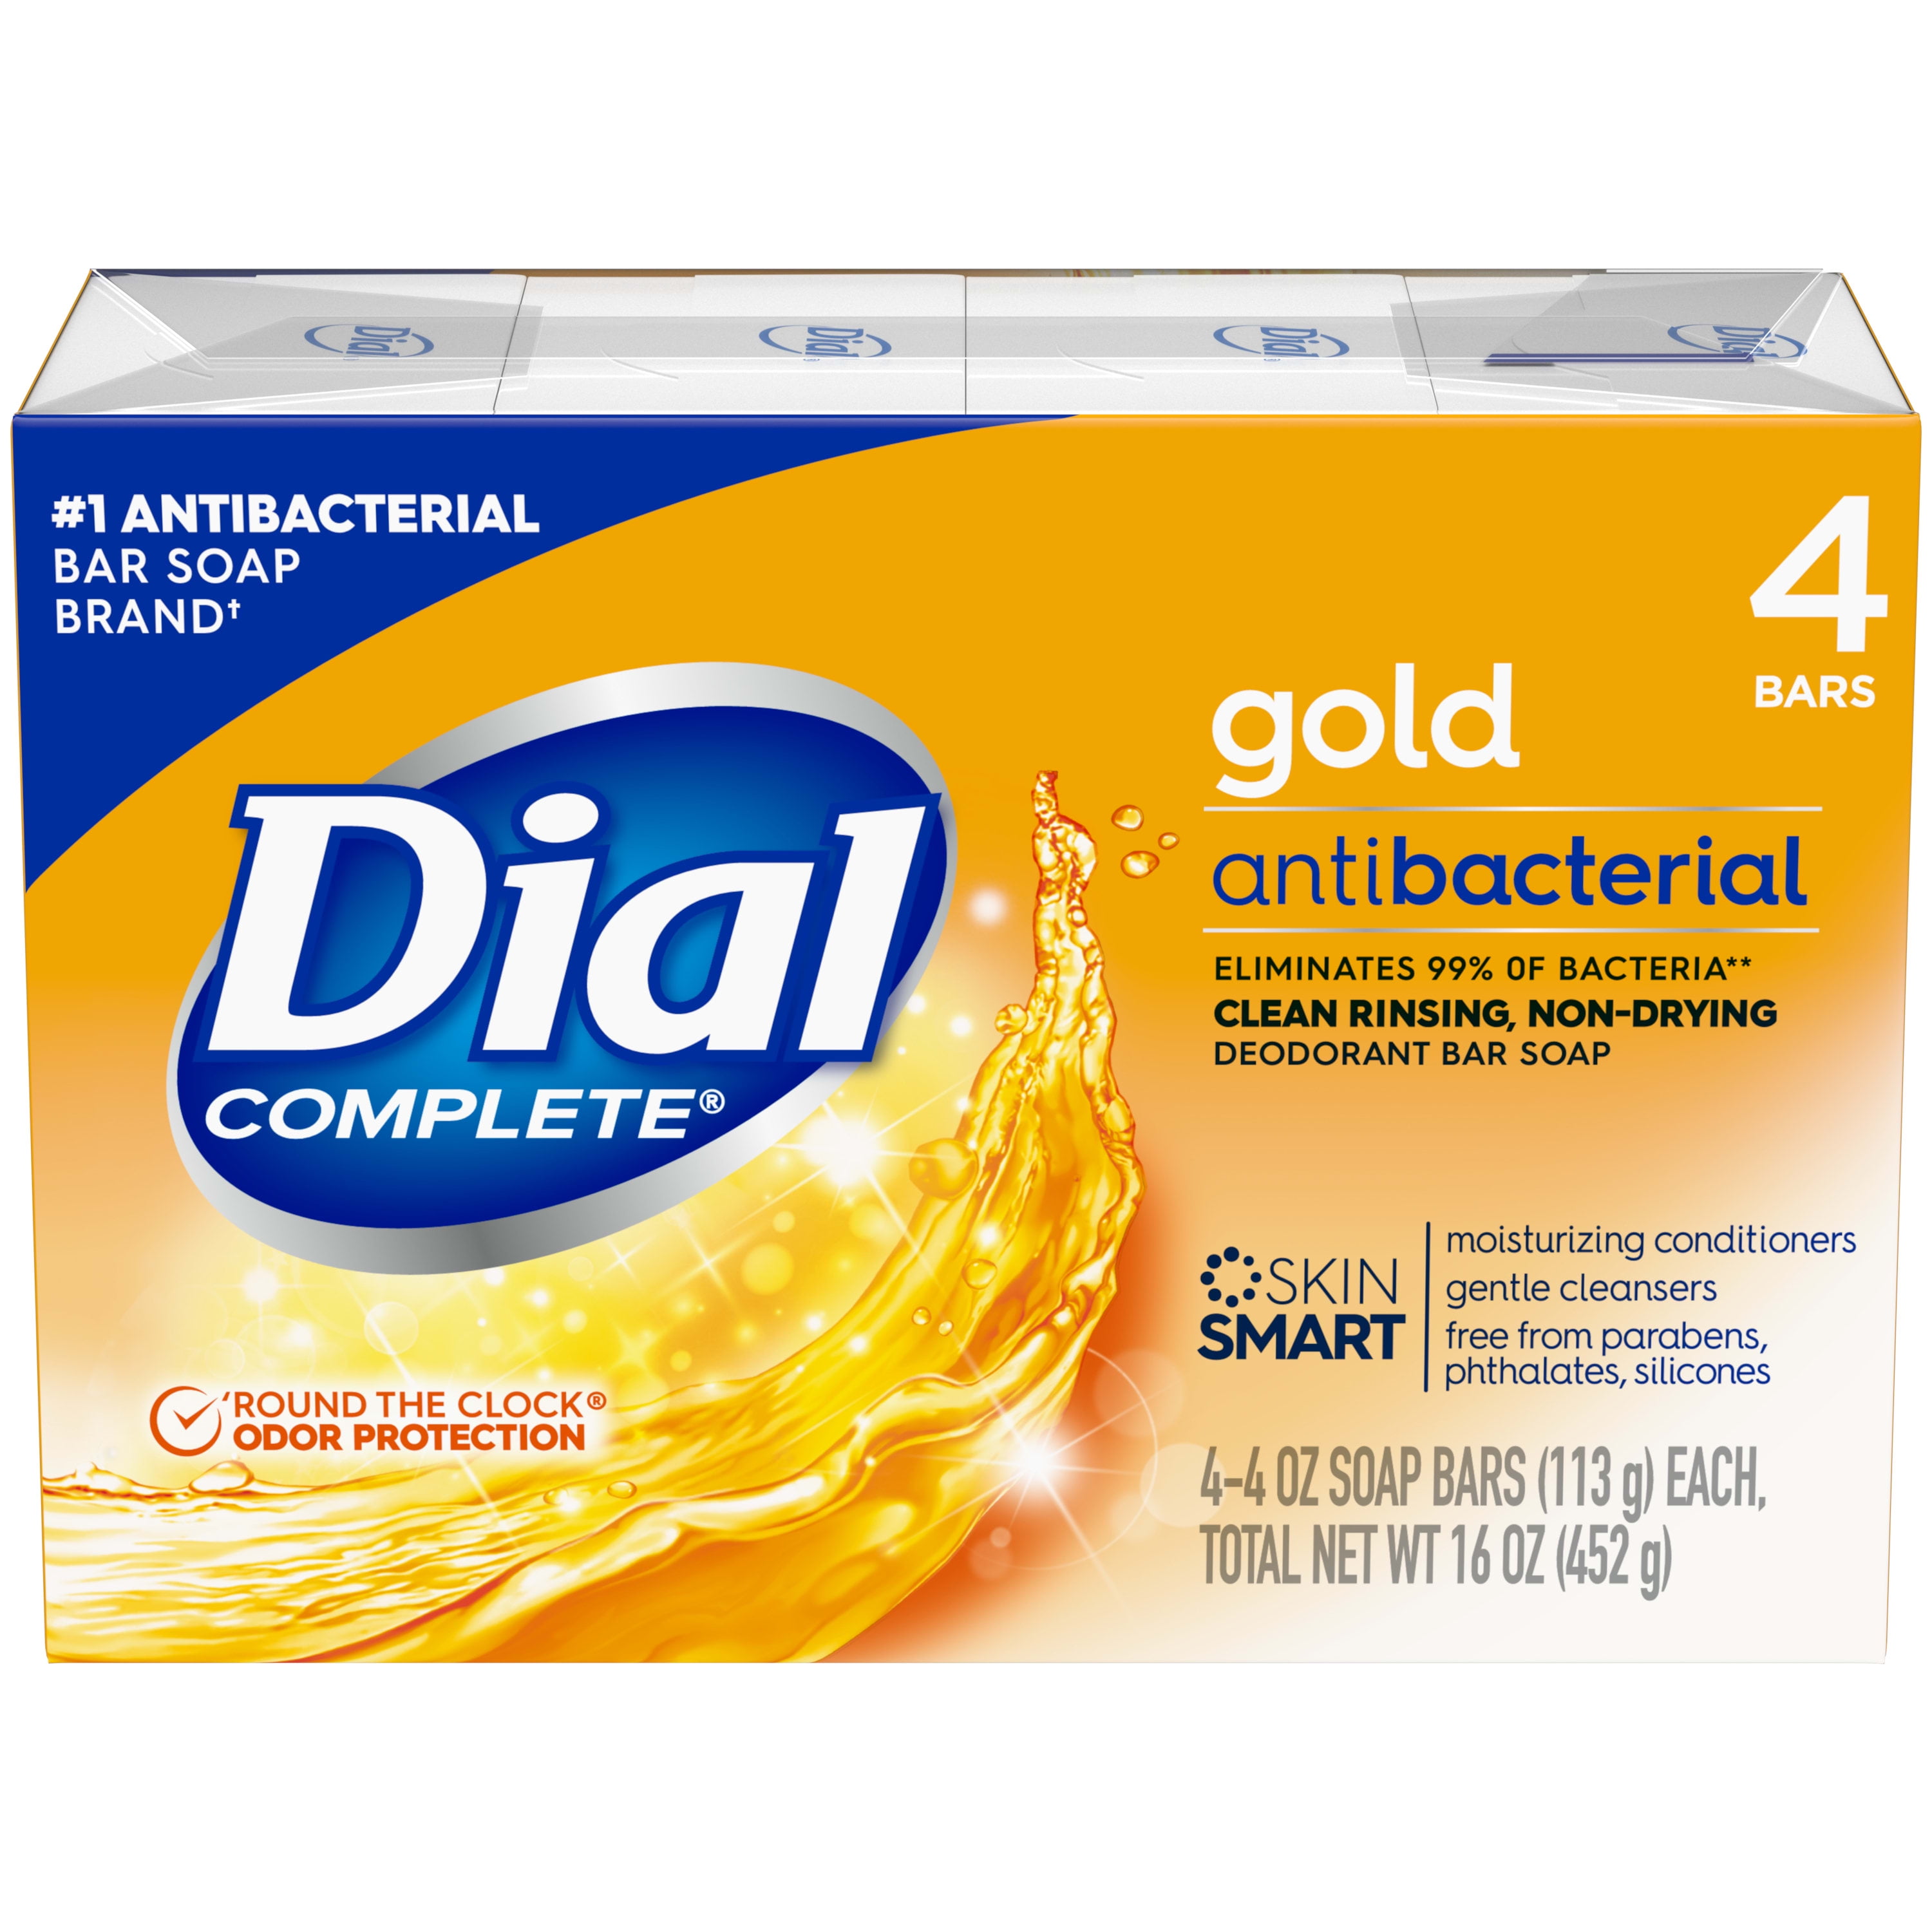 Dial Antibacterial Bar Soap, Gold, 4 oz, 4 Bars